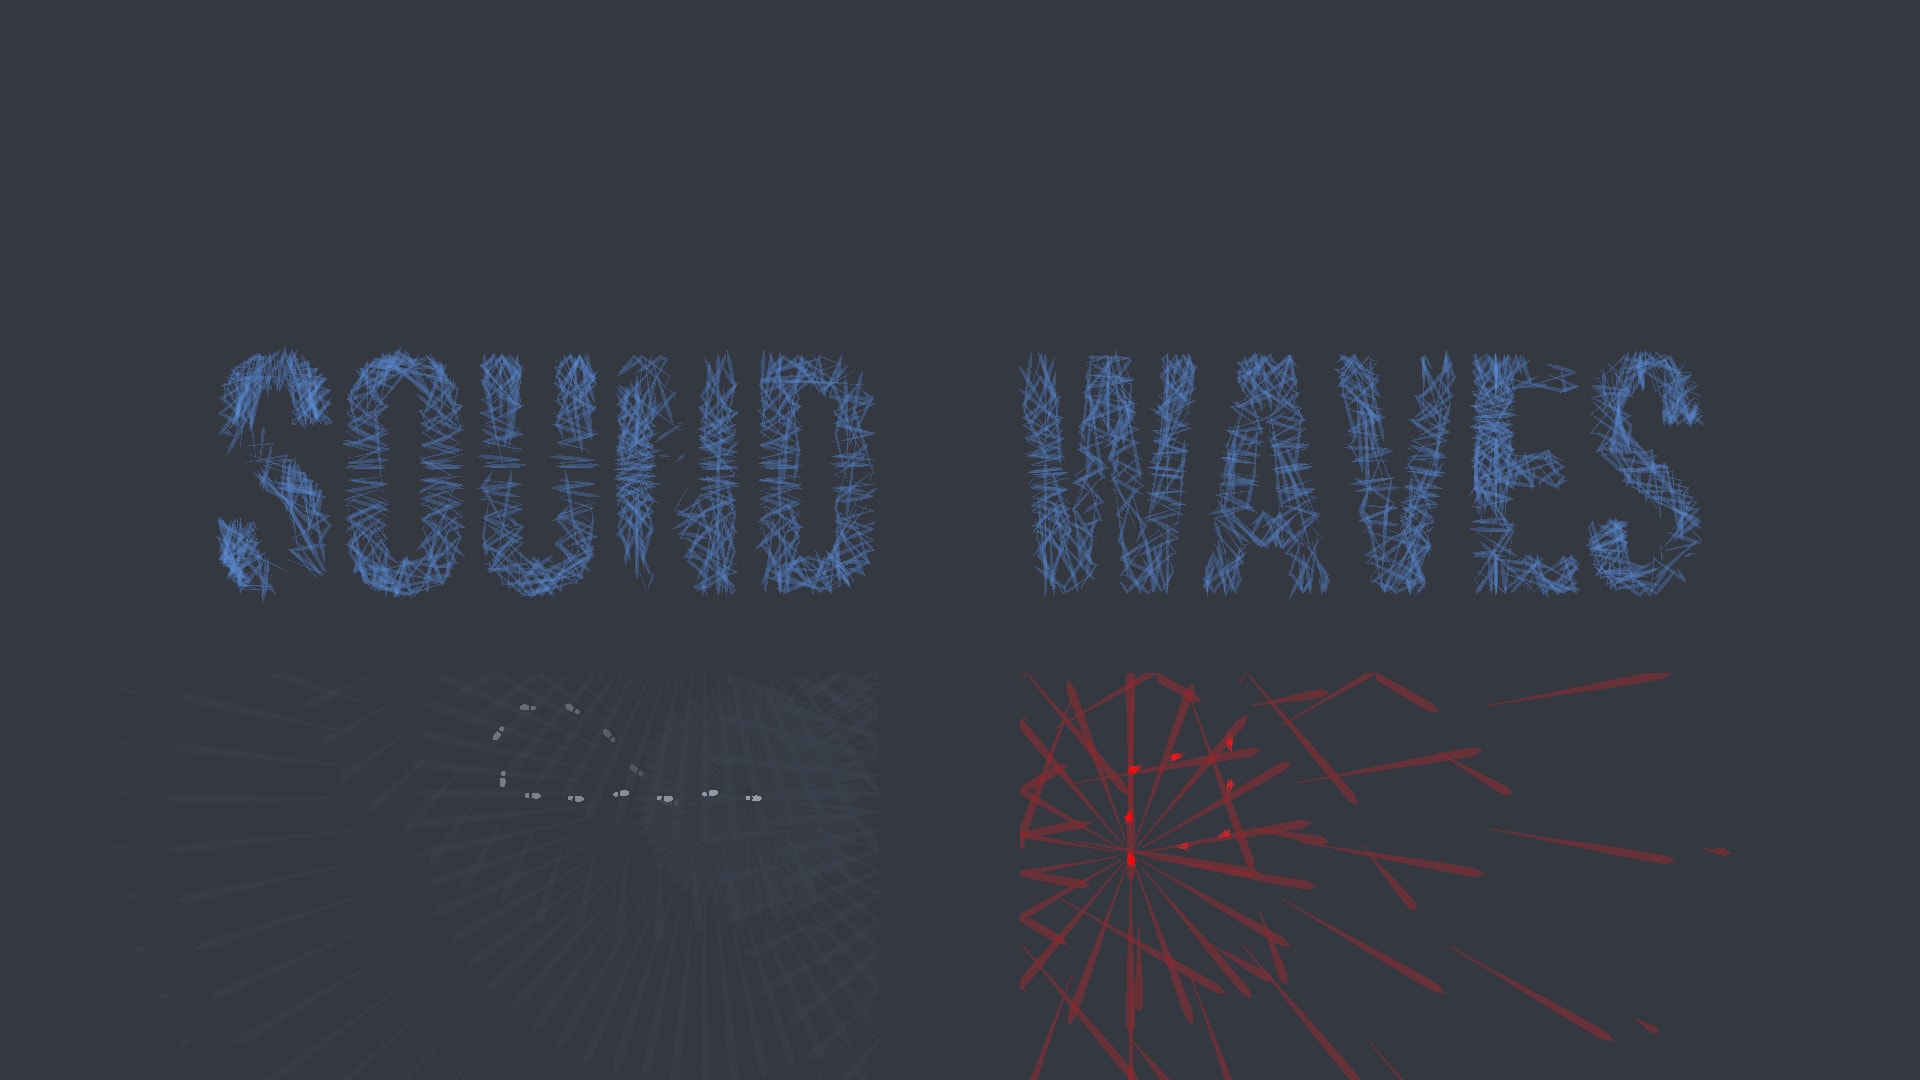 Sound waves 1